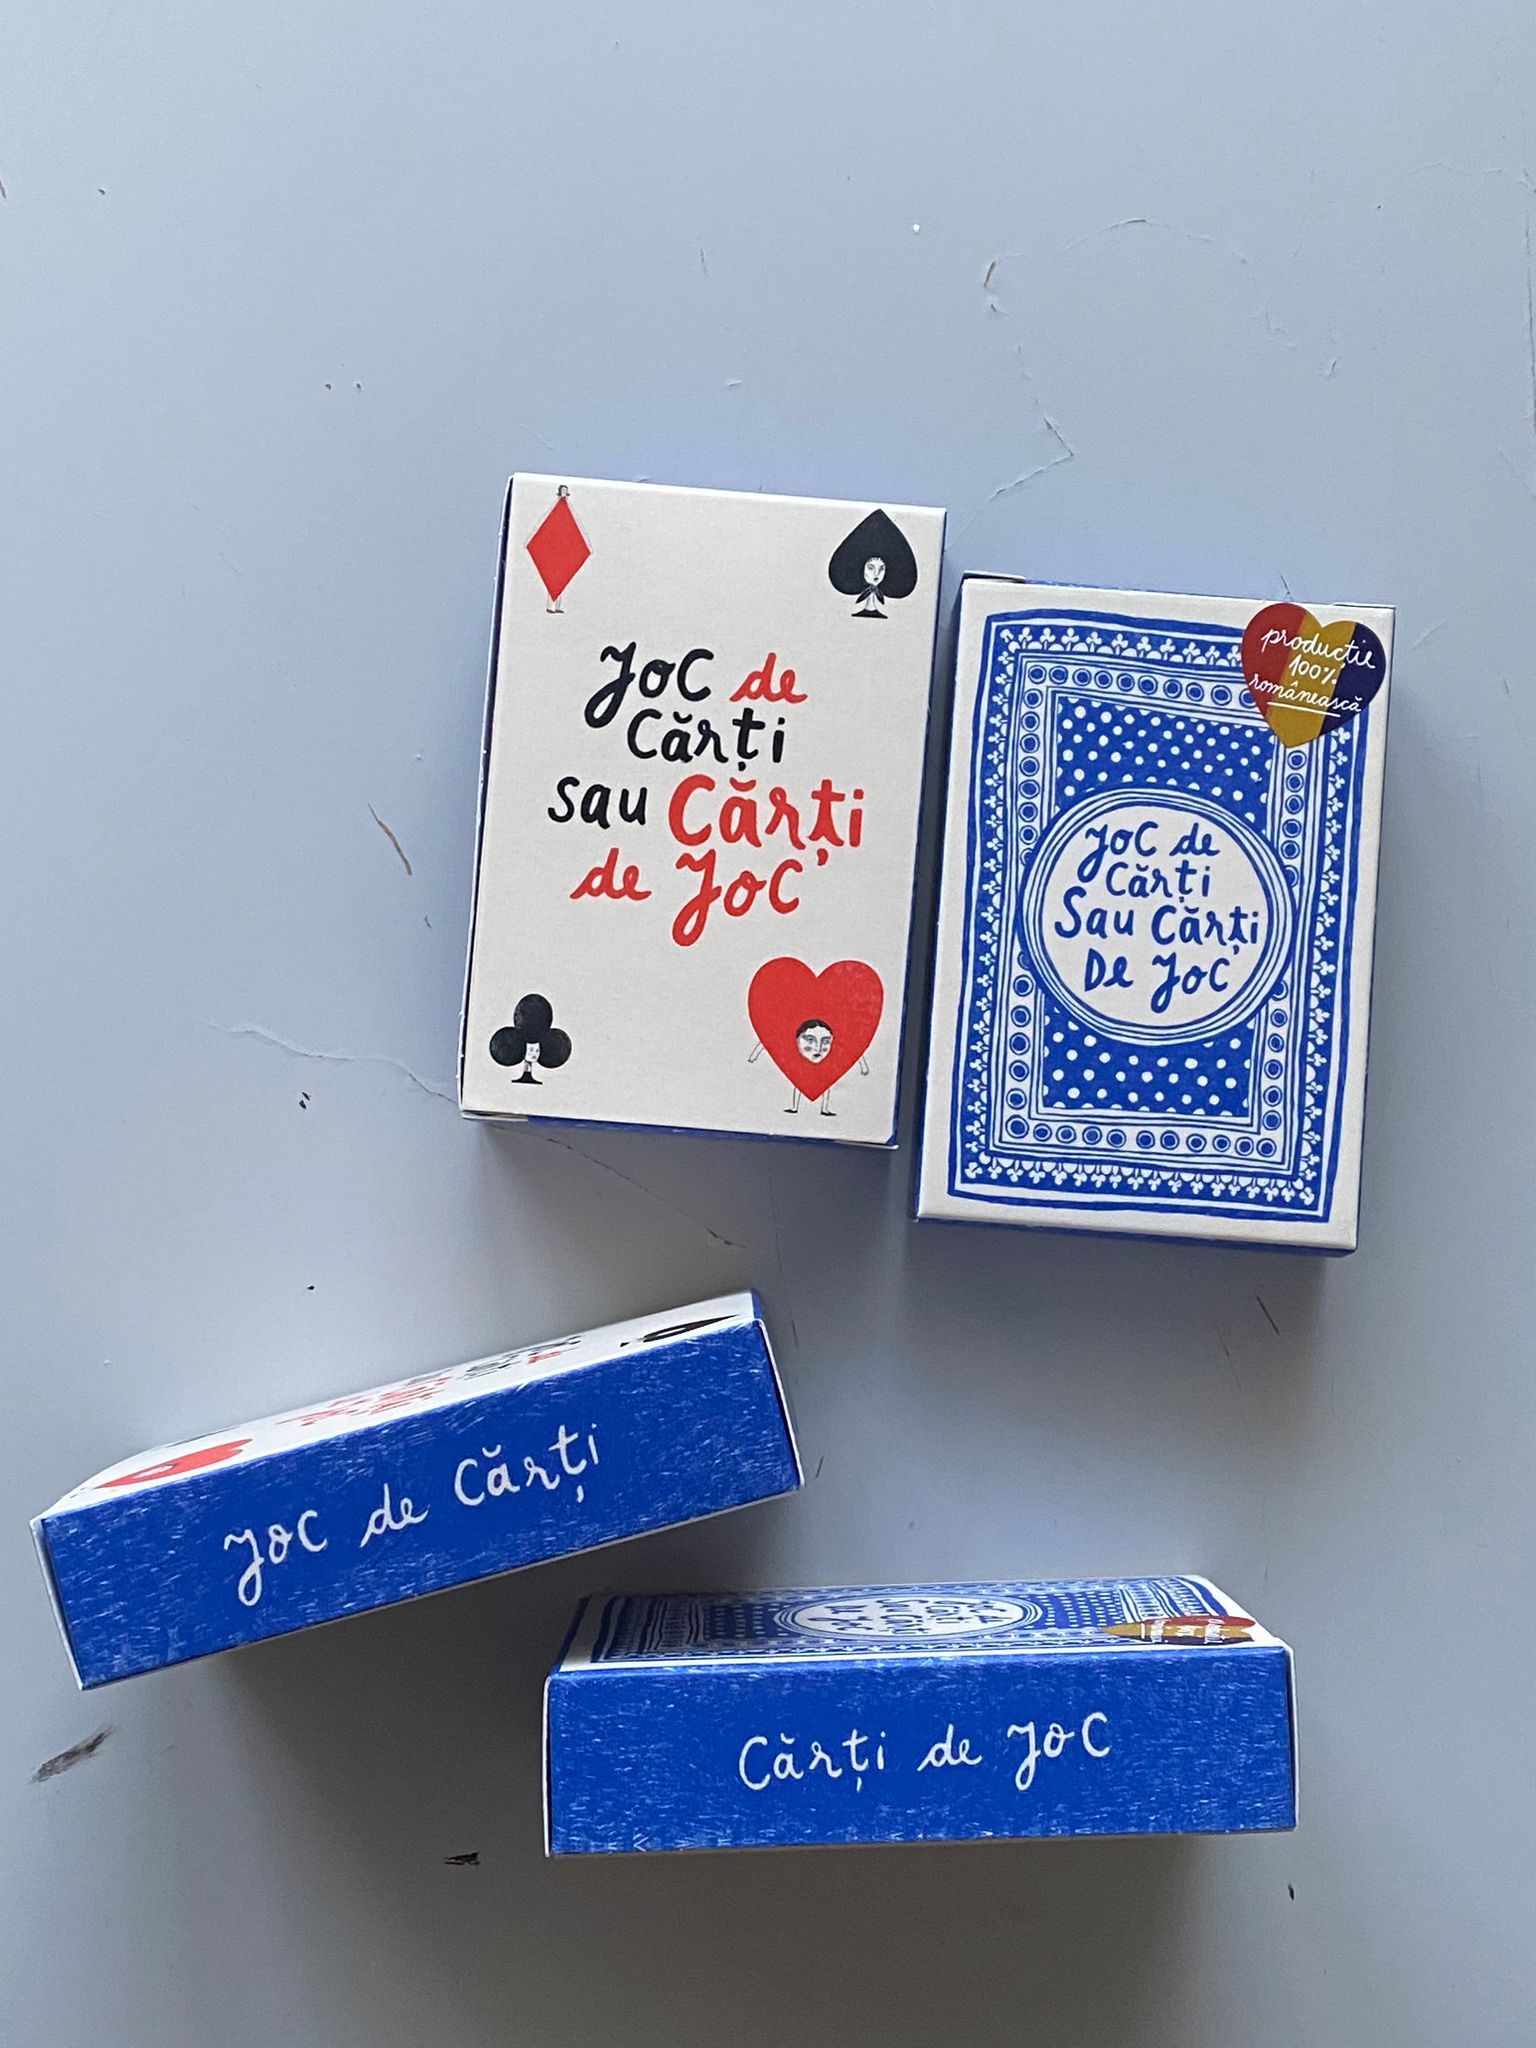  Joc de carti sau carti de joc | Iulia Verzan 